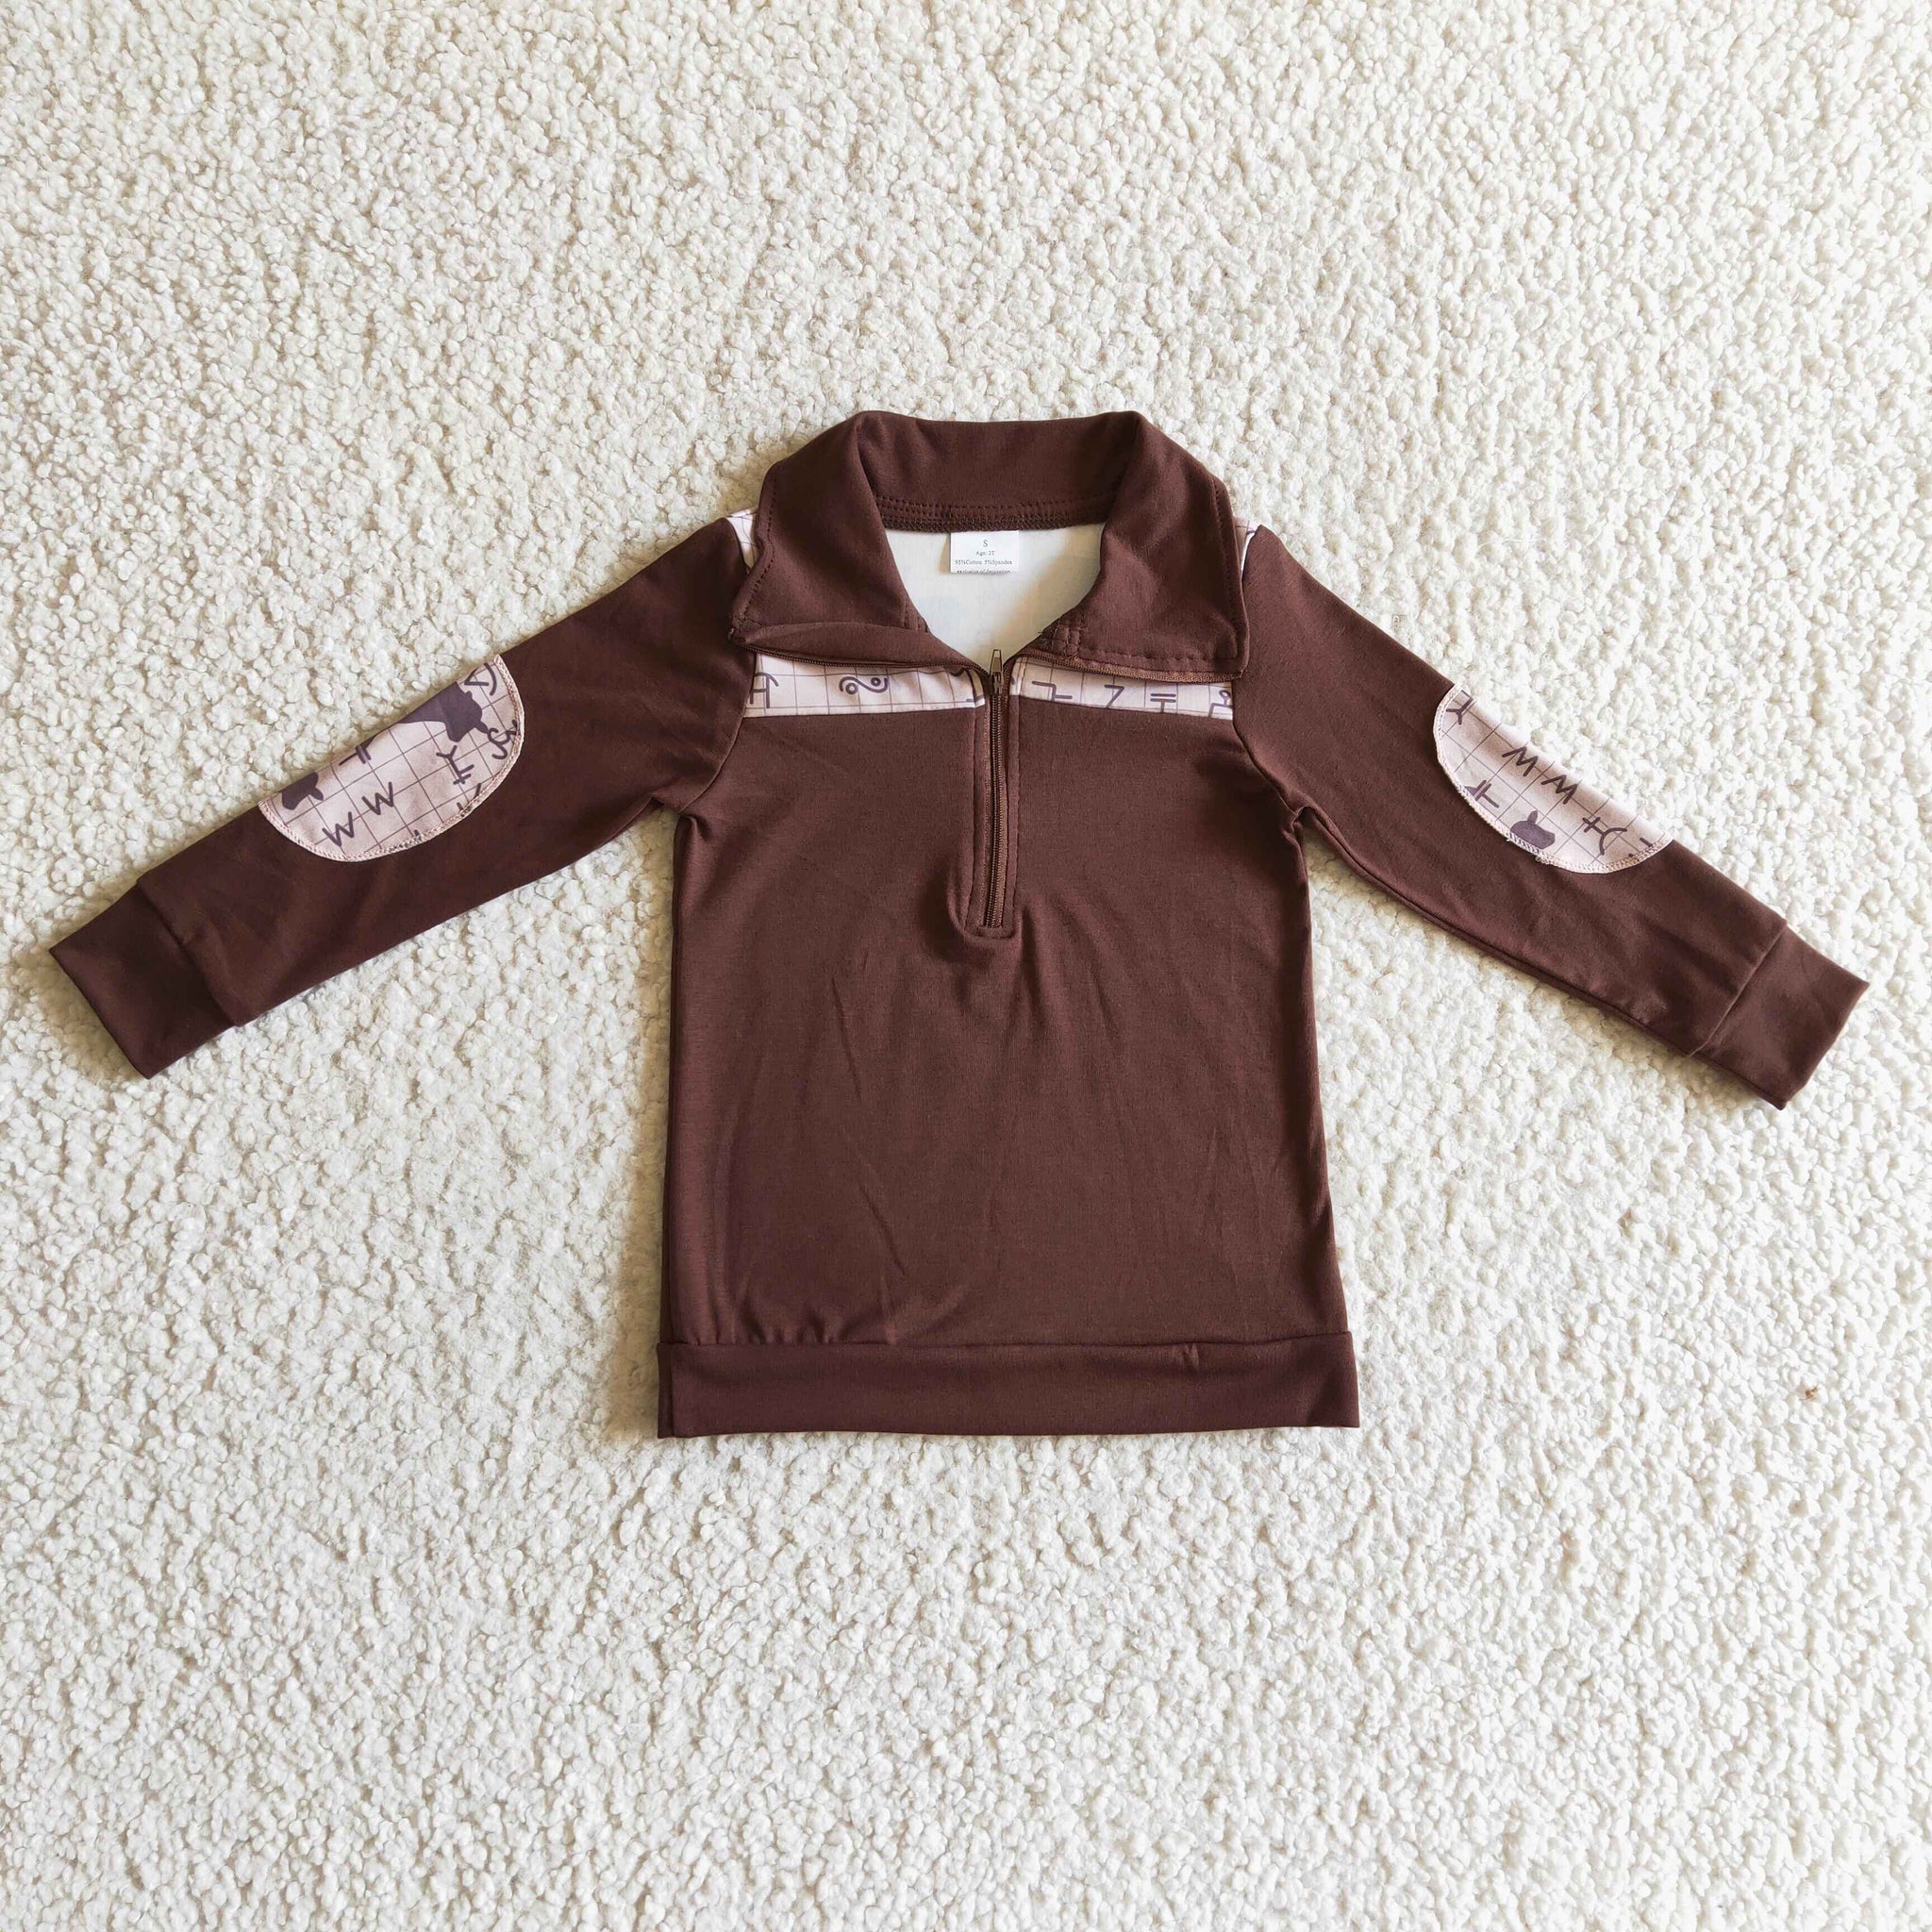 BT0107 baby boy clothes brown zipper shirt